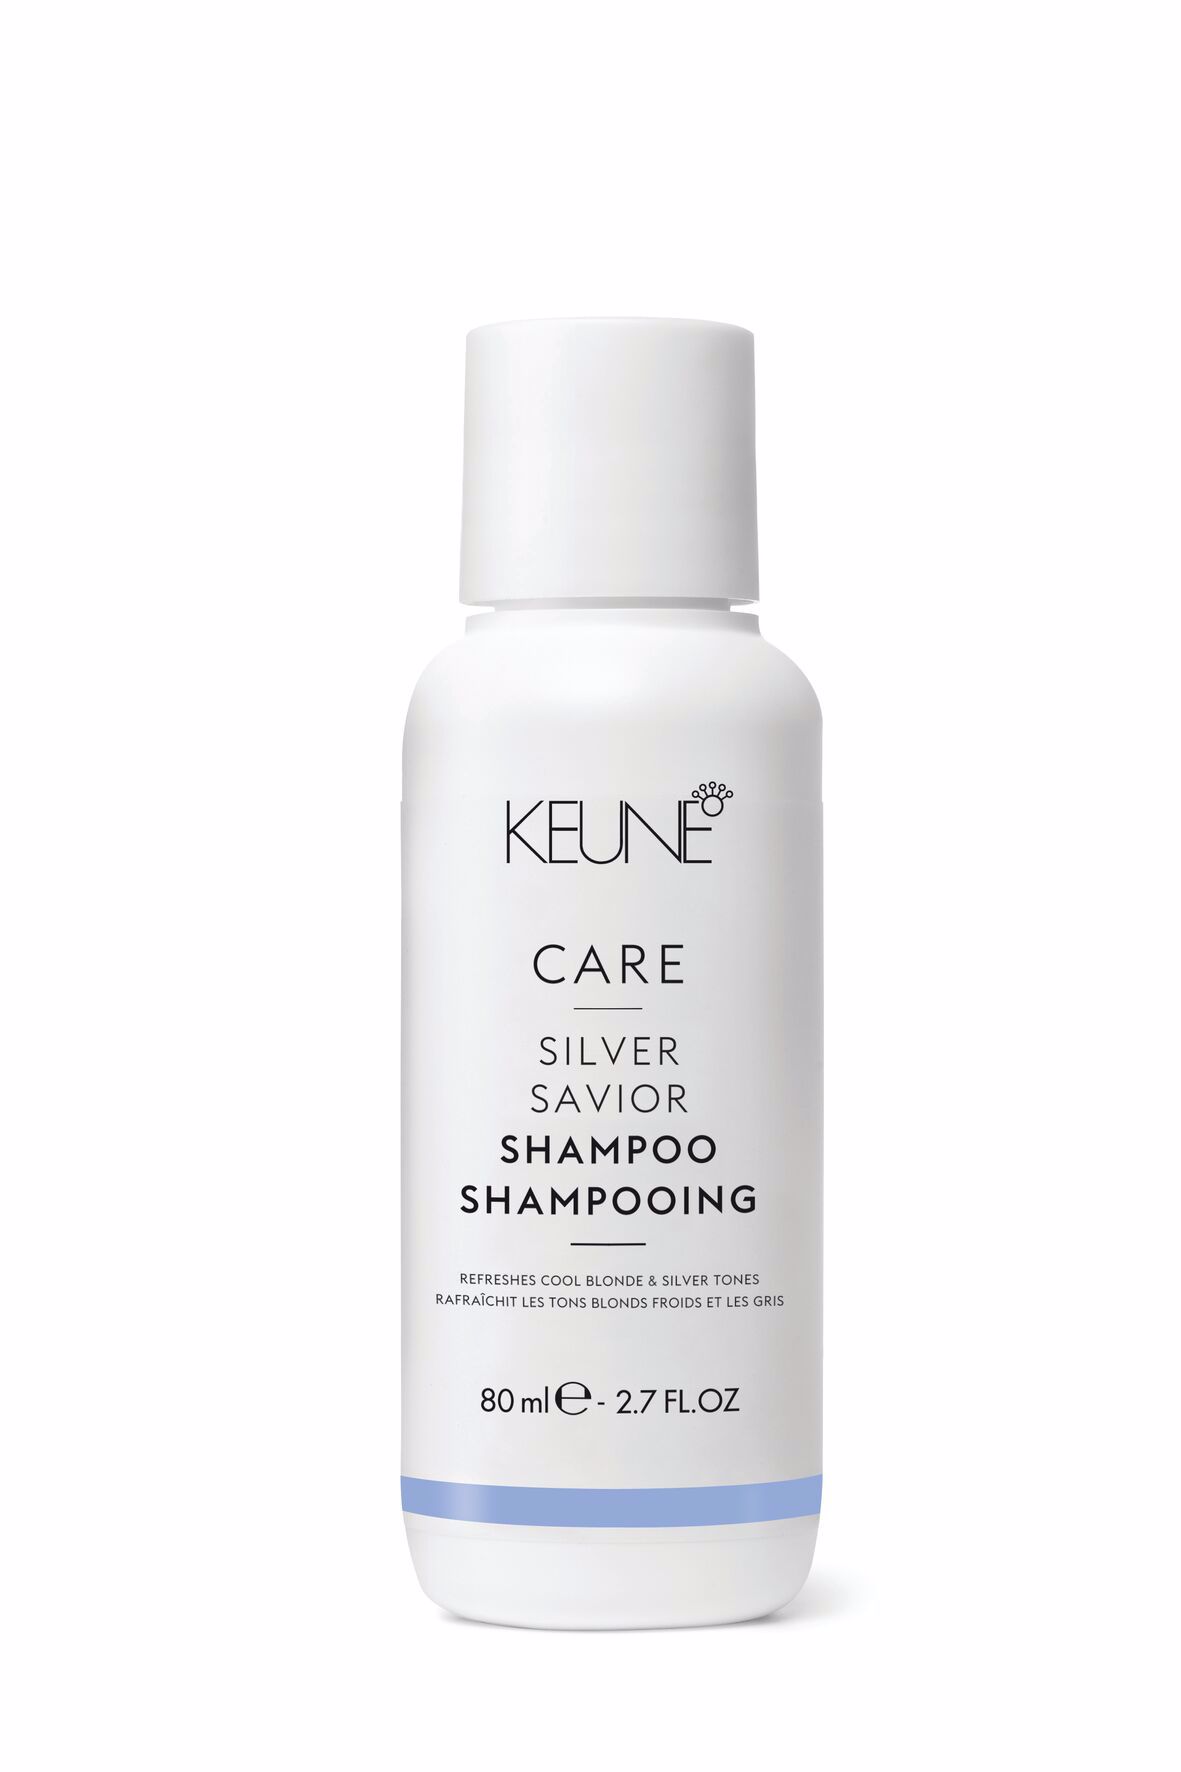 CARE Silver Savior Shampoo